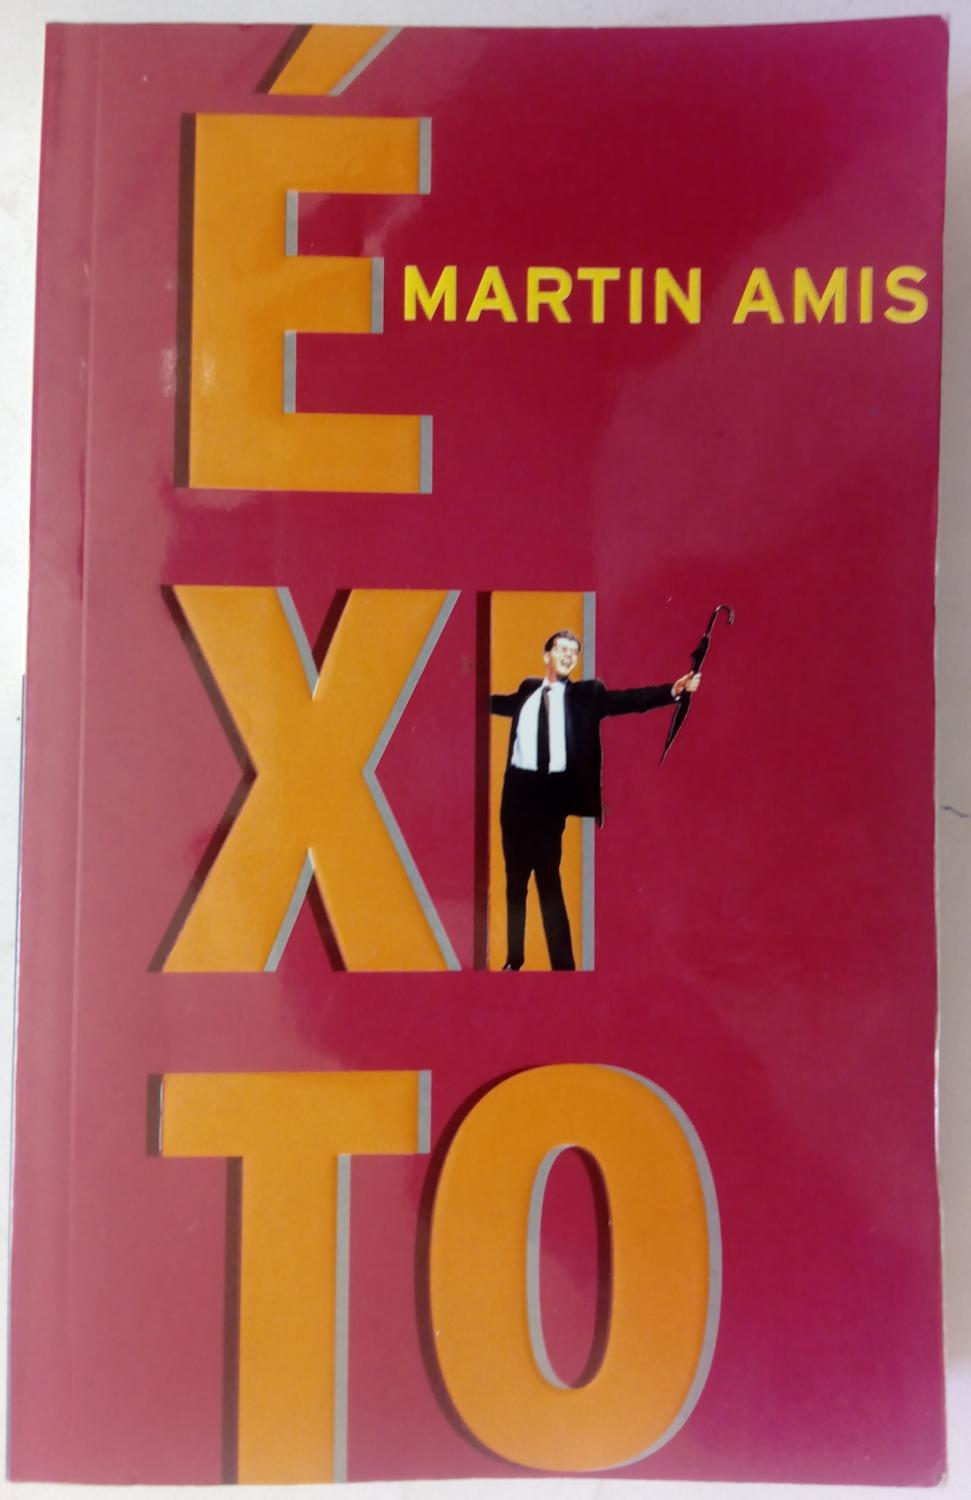 Éxito - Martin Amis